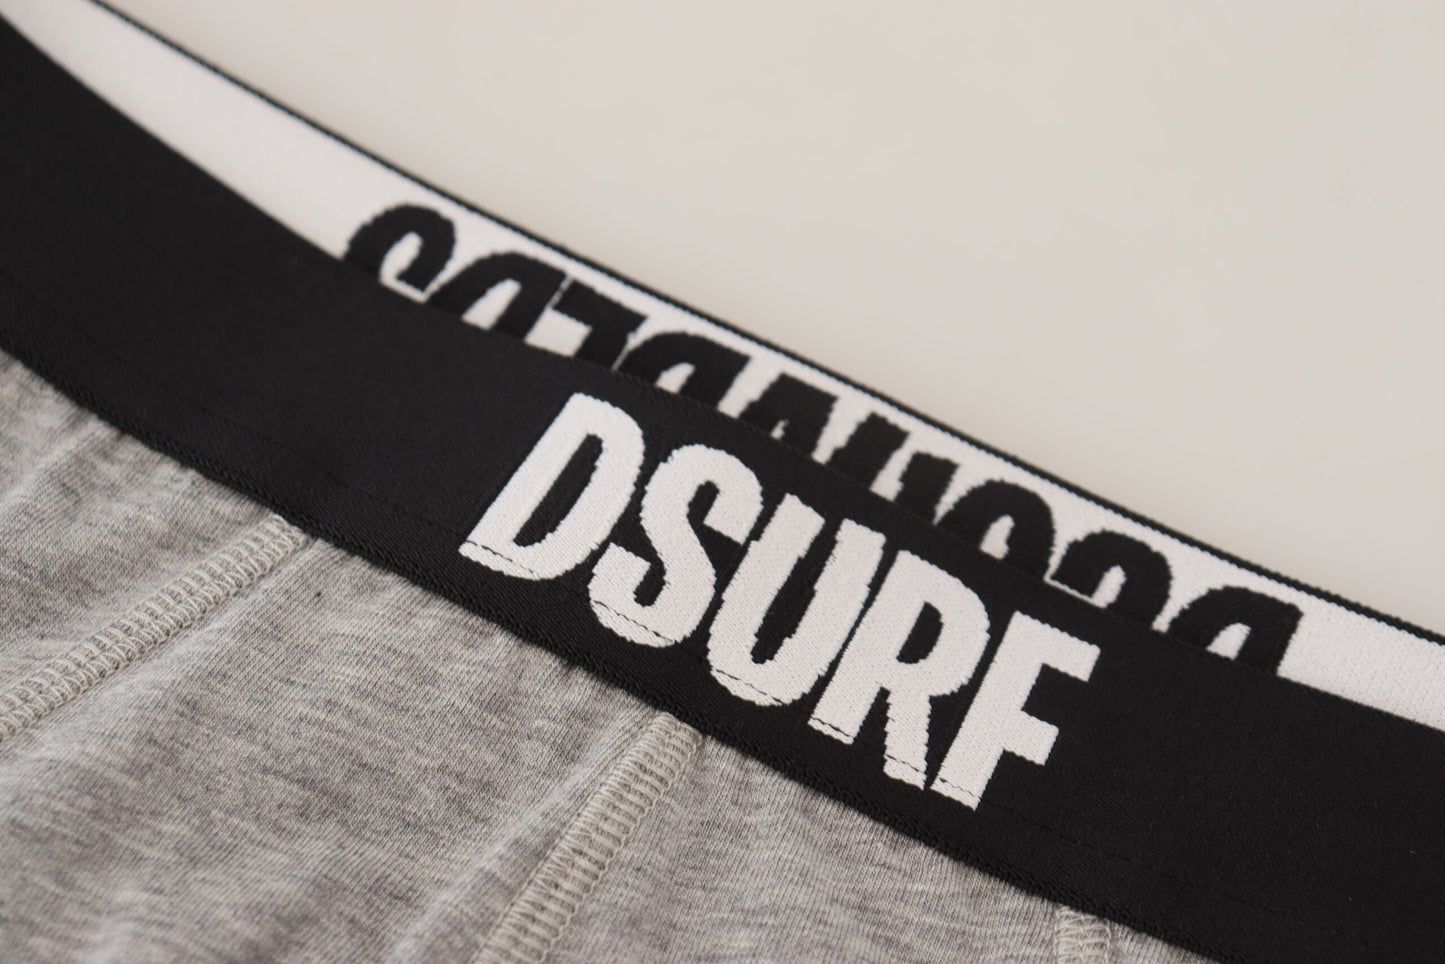 Dsquared² gris dsurf logo coton stretch men met sous-vêtements